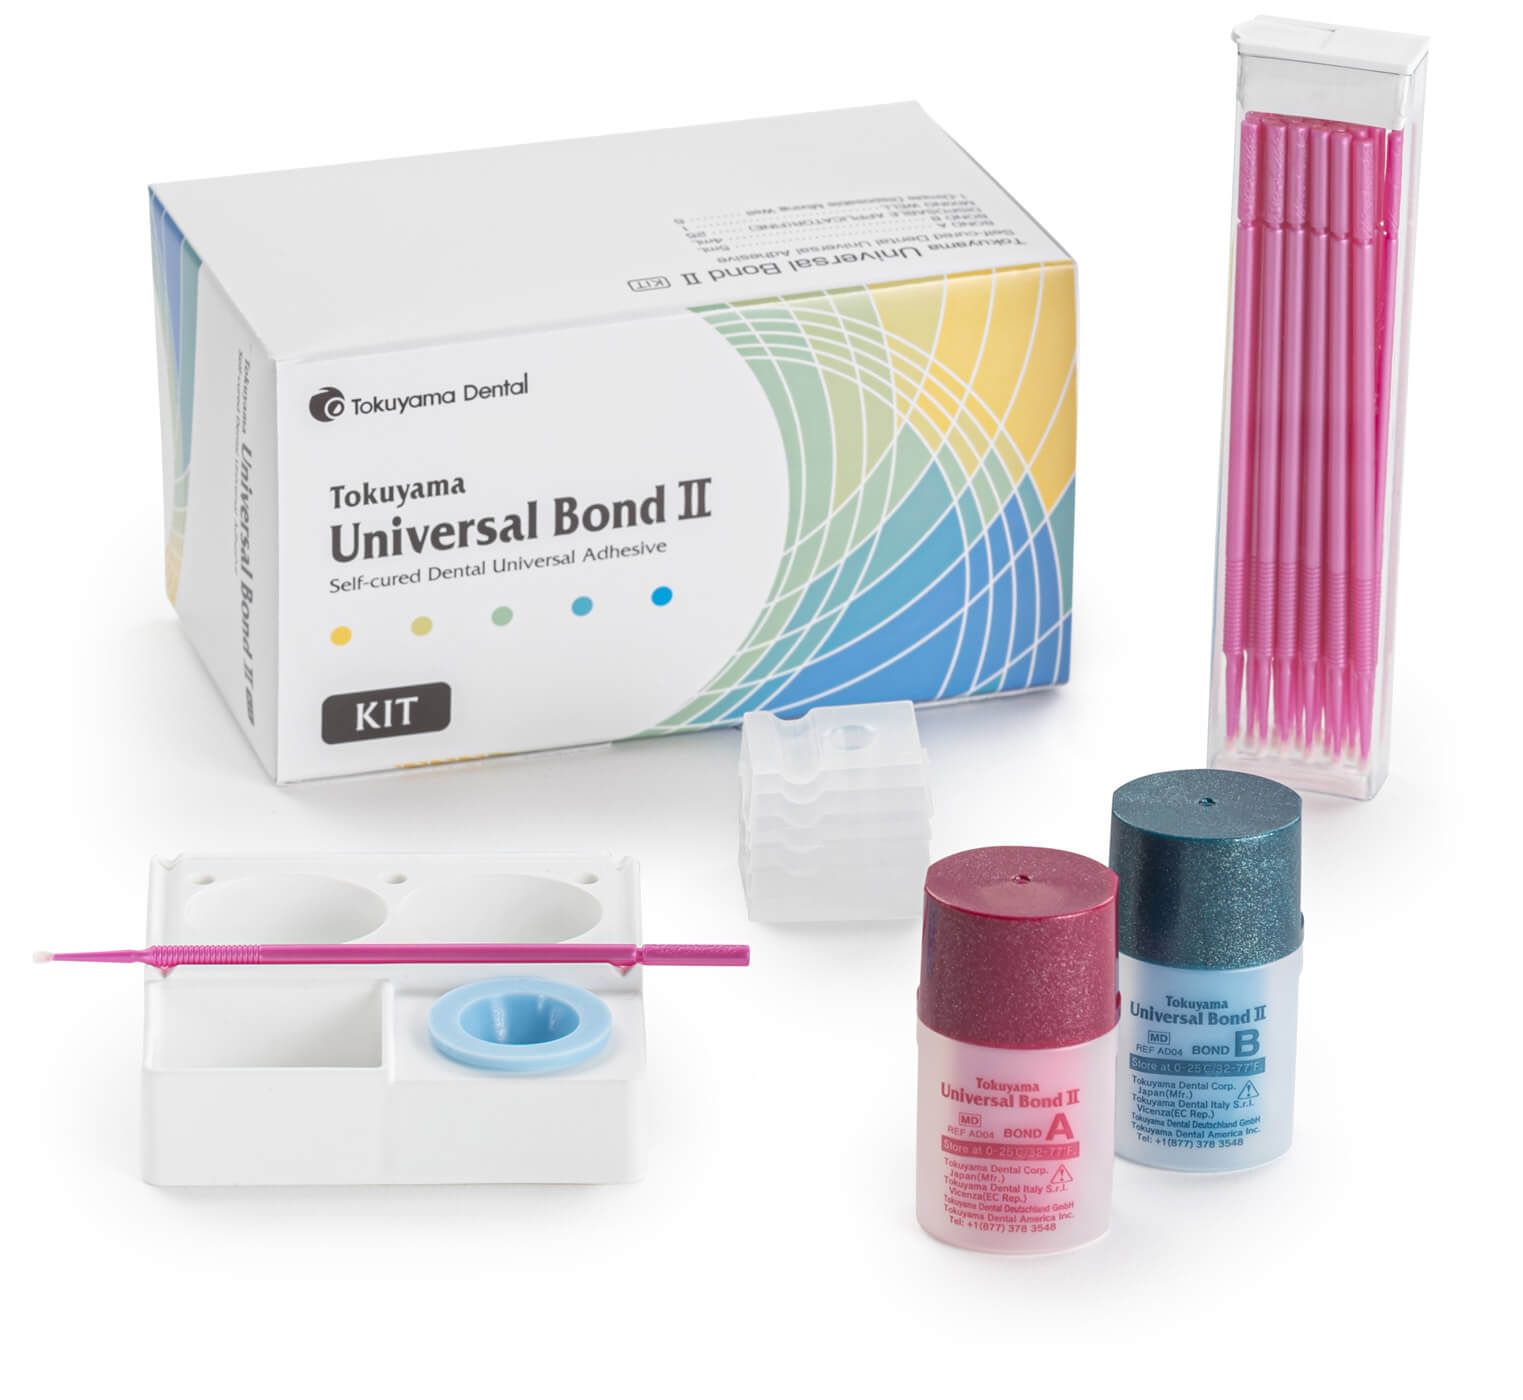 Купить Бонд Universal Bond II набор материал стоматологический адгезивный (Bond A 5мл, Bond B 4мл + аксесс.) (Tokuyama)